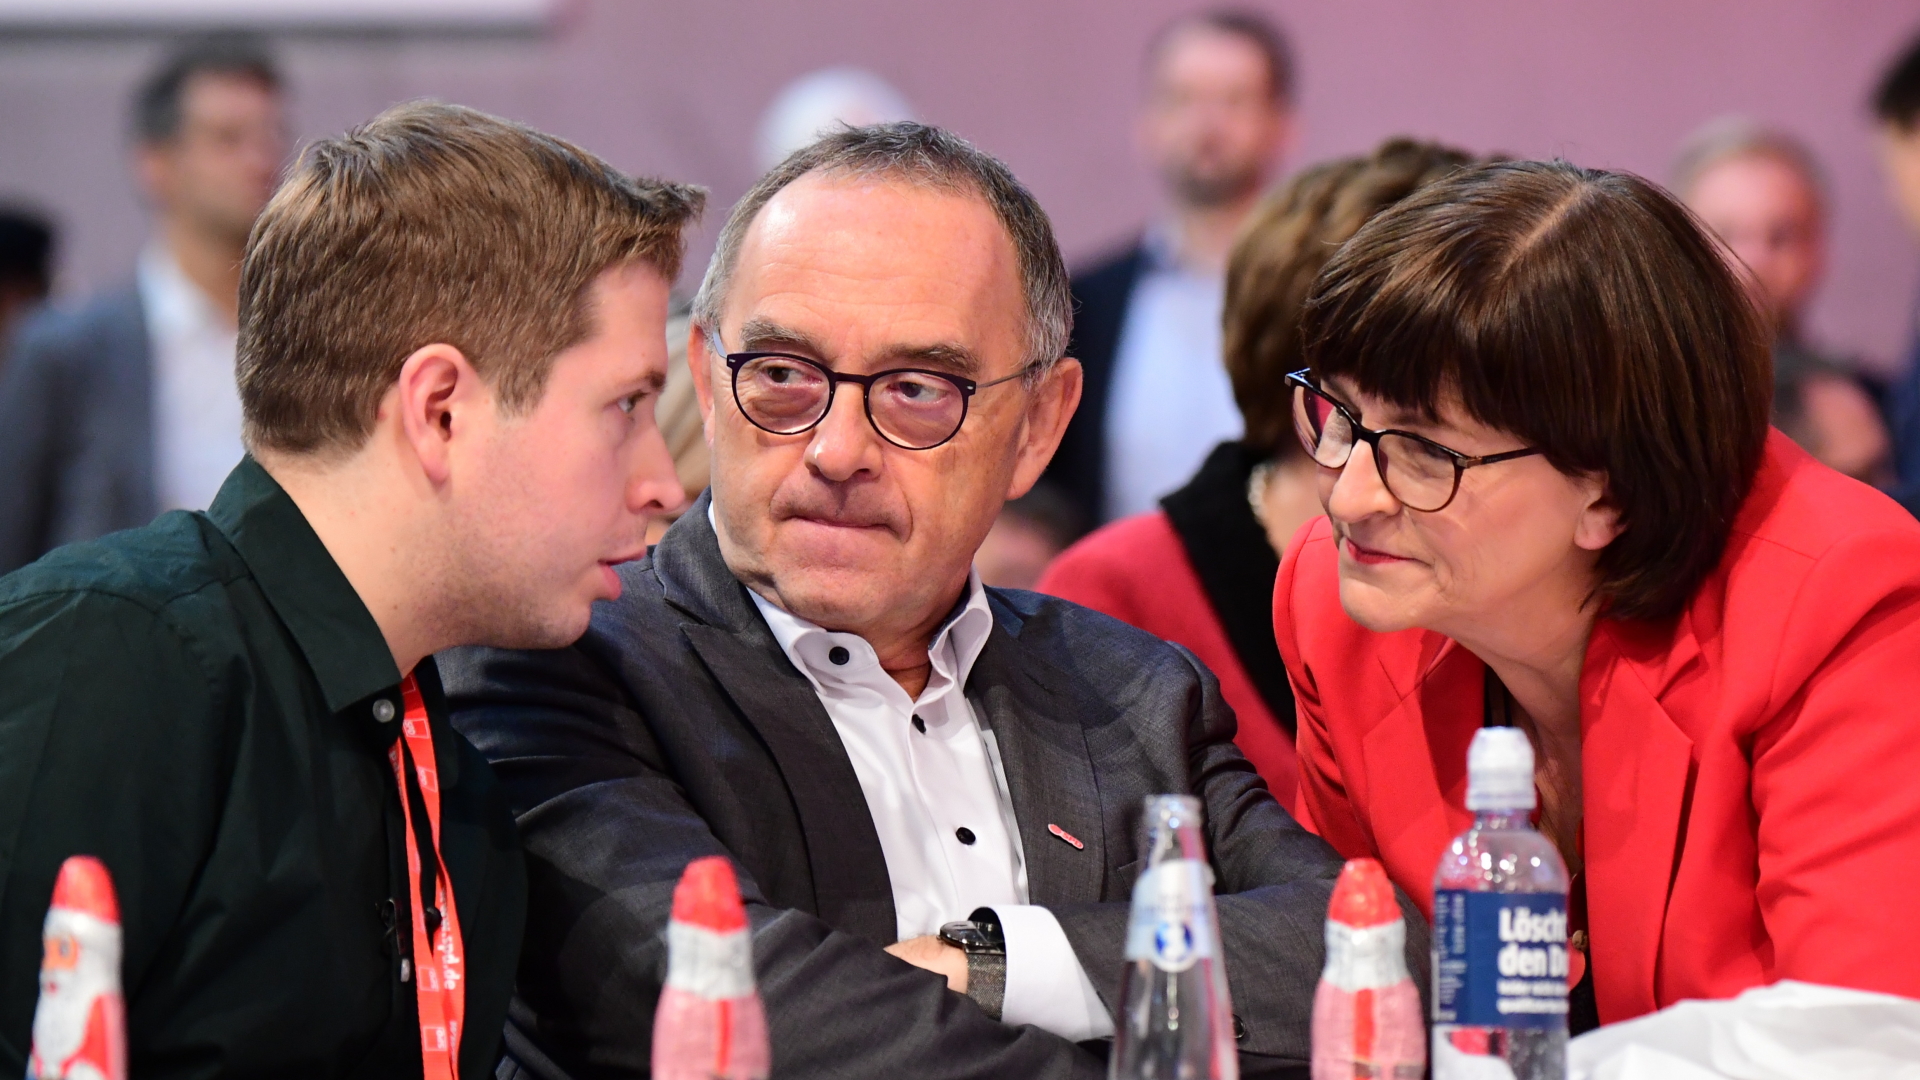 Kevin Kühnert (l), Bundesvorsitzender der Jusos, spricht mit Norbert Walter-Borjans und Saskia Esken, den beiden Bundesvorsitzenden der SPD (Archivfoto aus dem Dezember 2019). | CLEMENS BILAN/EPA-EFE/REX